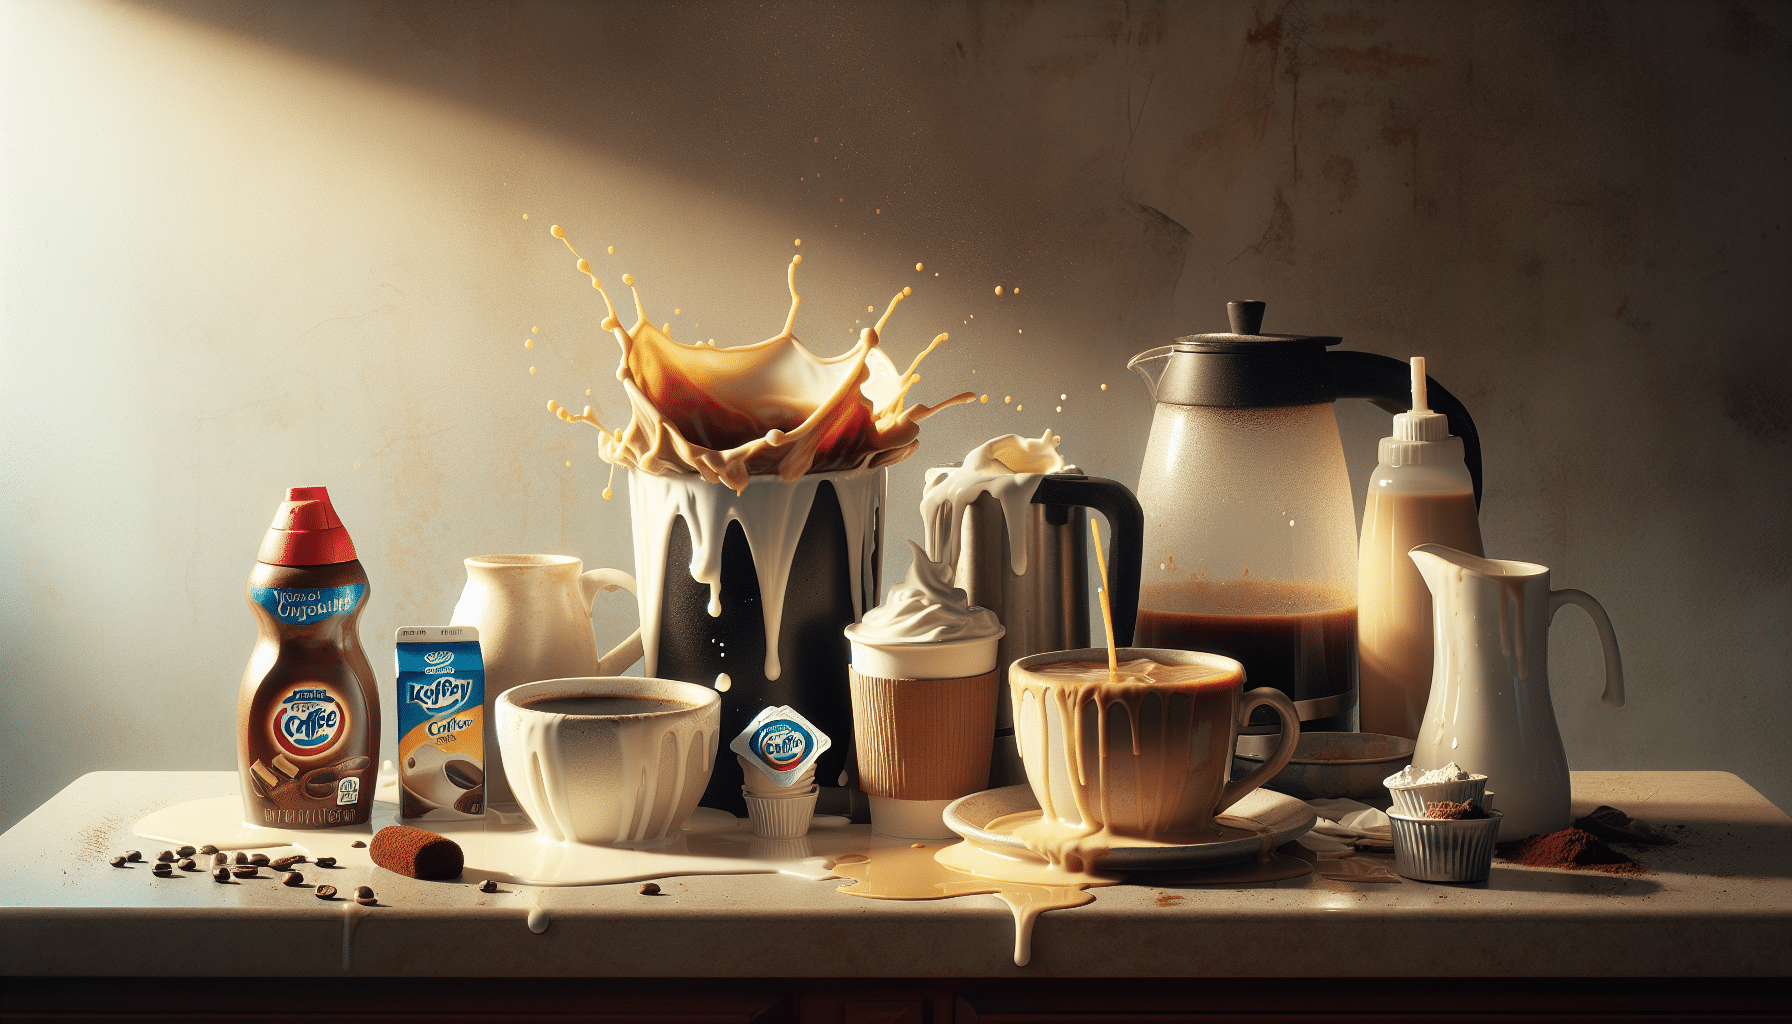 Humorous exploration of perfecting coffee creamer ratio